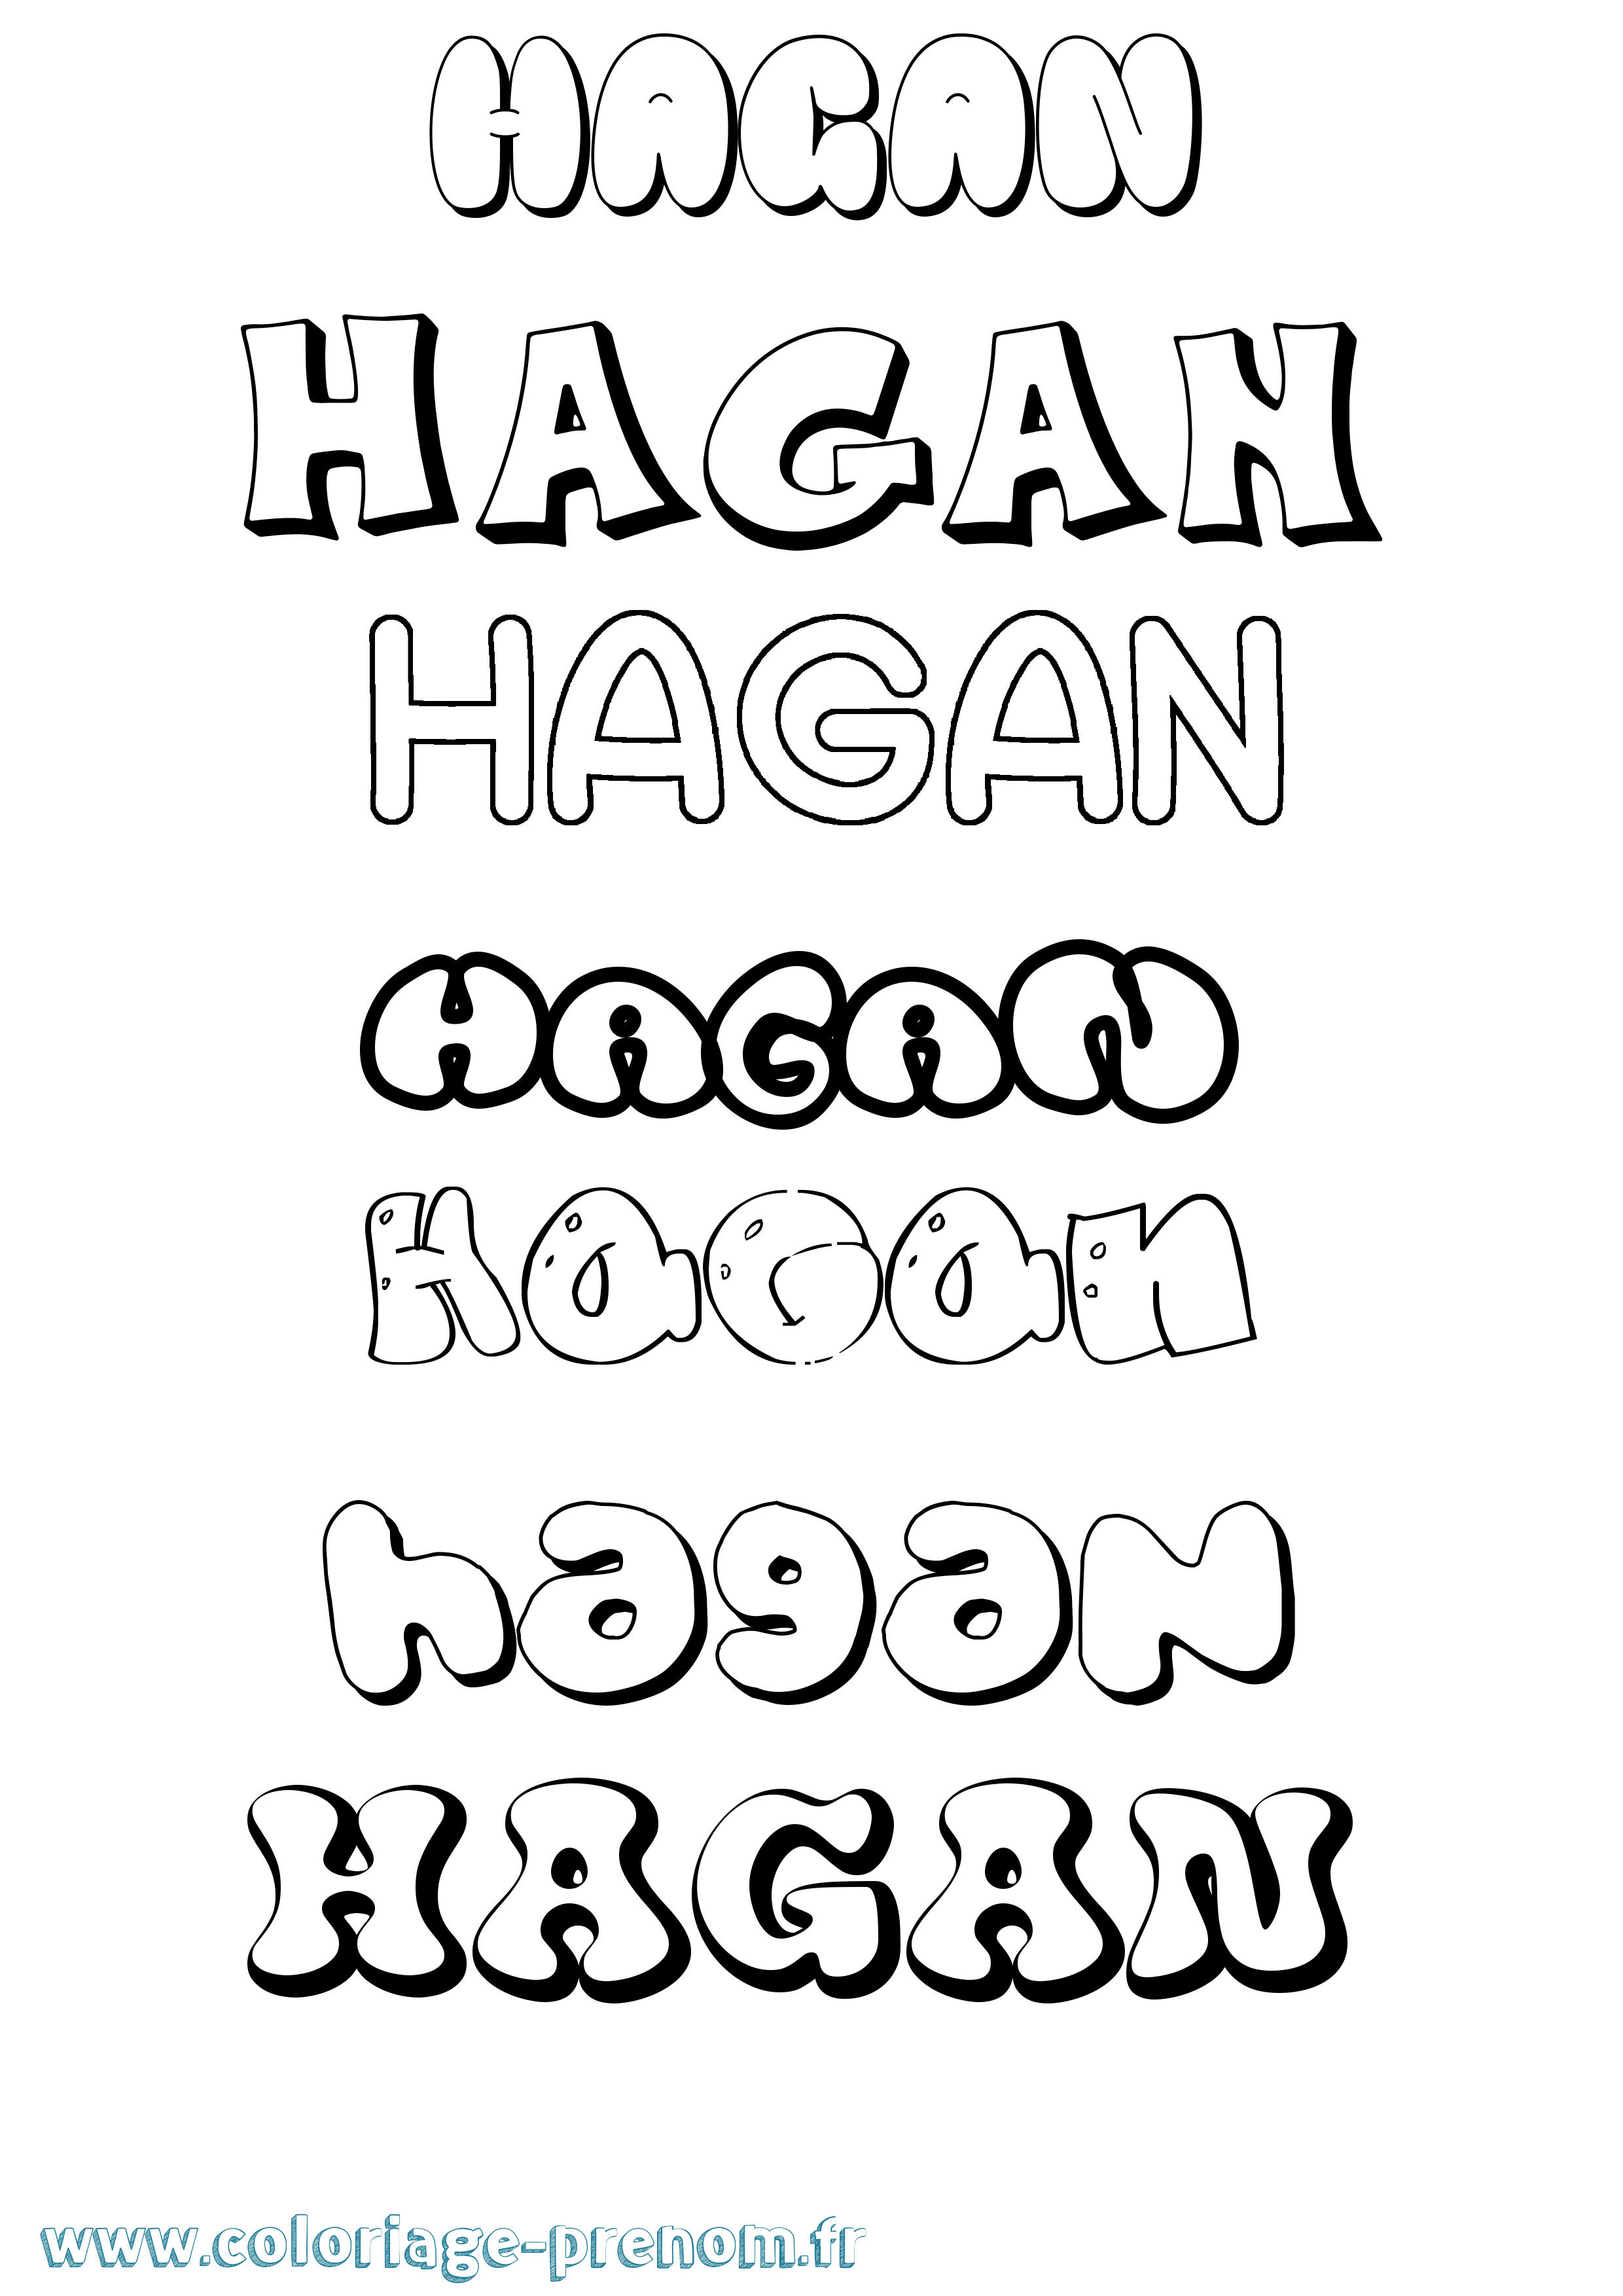 Coloriage prénom Hagan Bubble